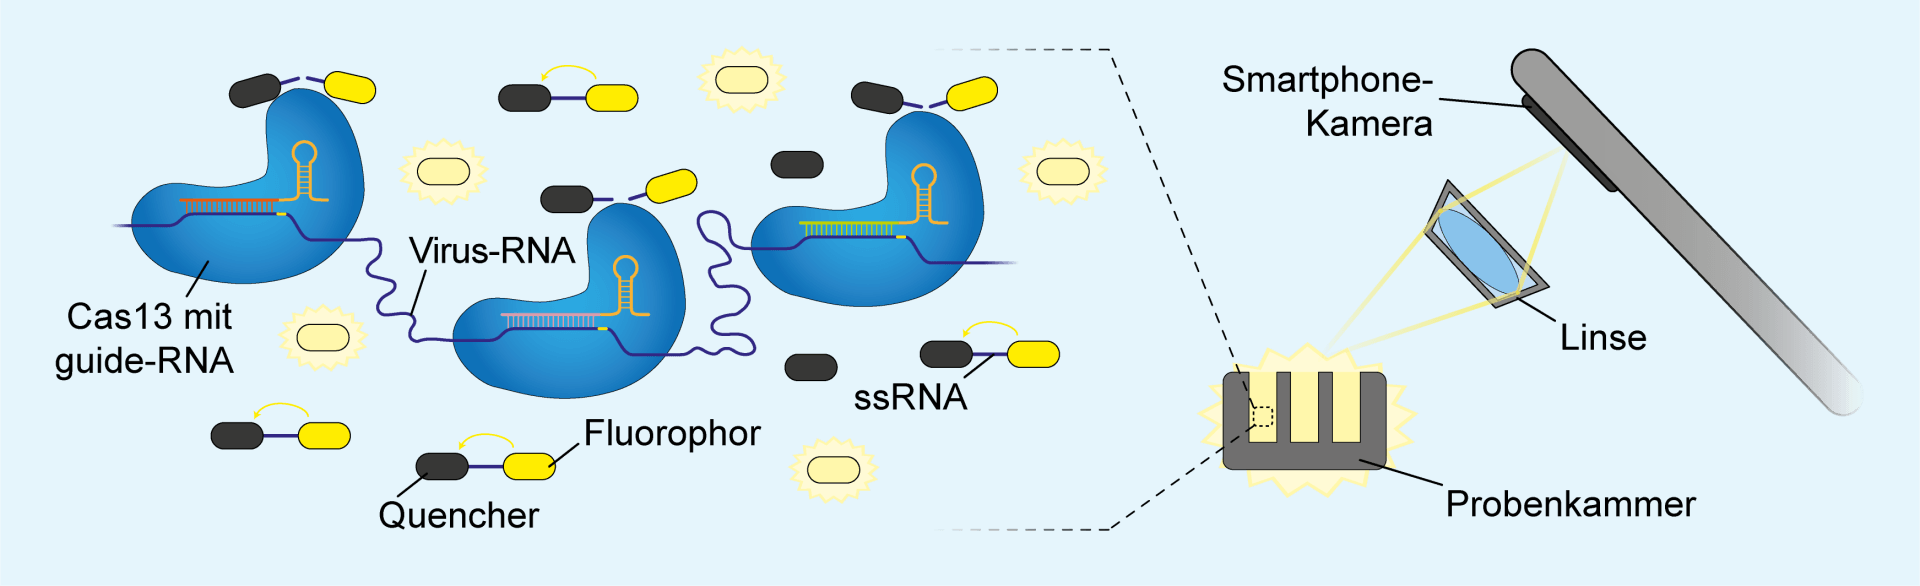 Nachweis einer SARS-CoV-2-Infektion durch CRISPR/Cas13 und Smartphone-Kamera